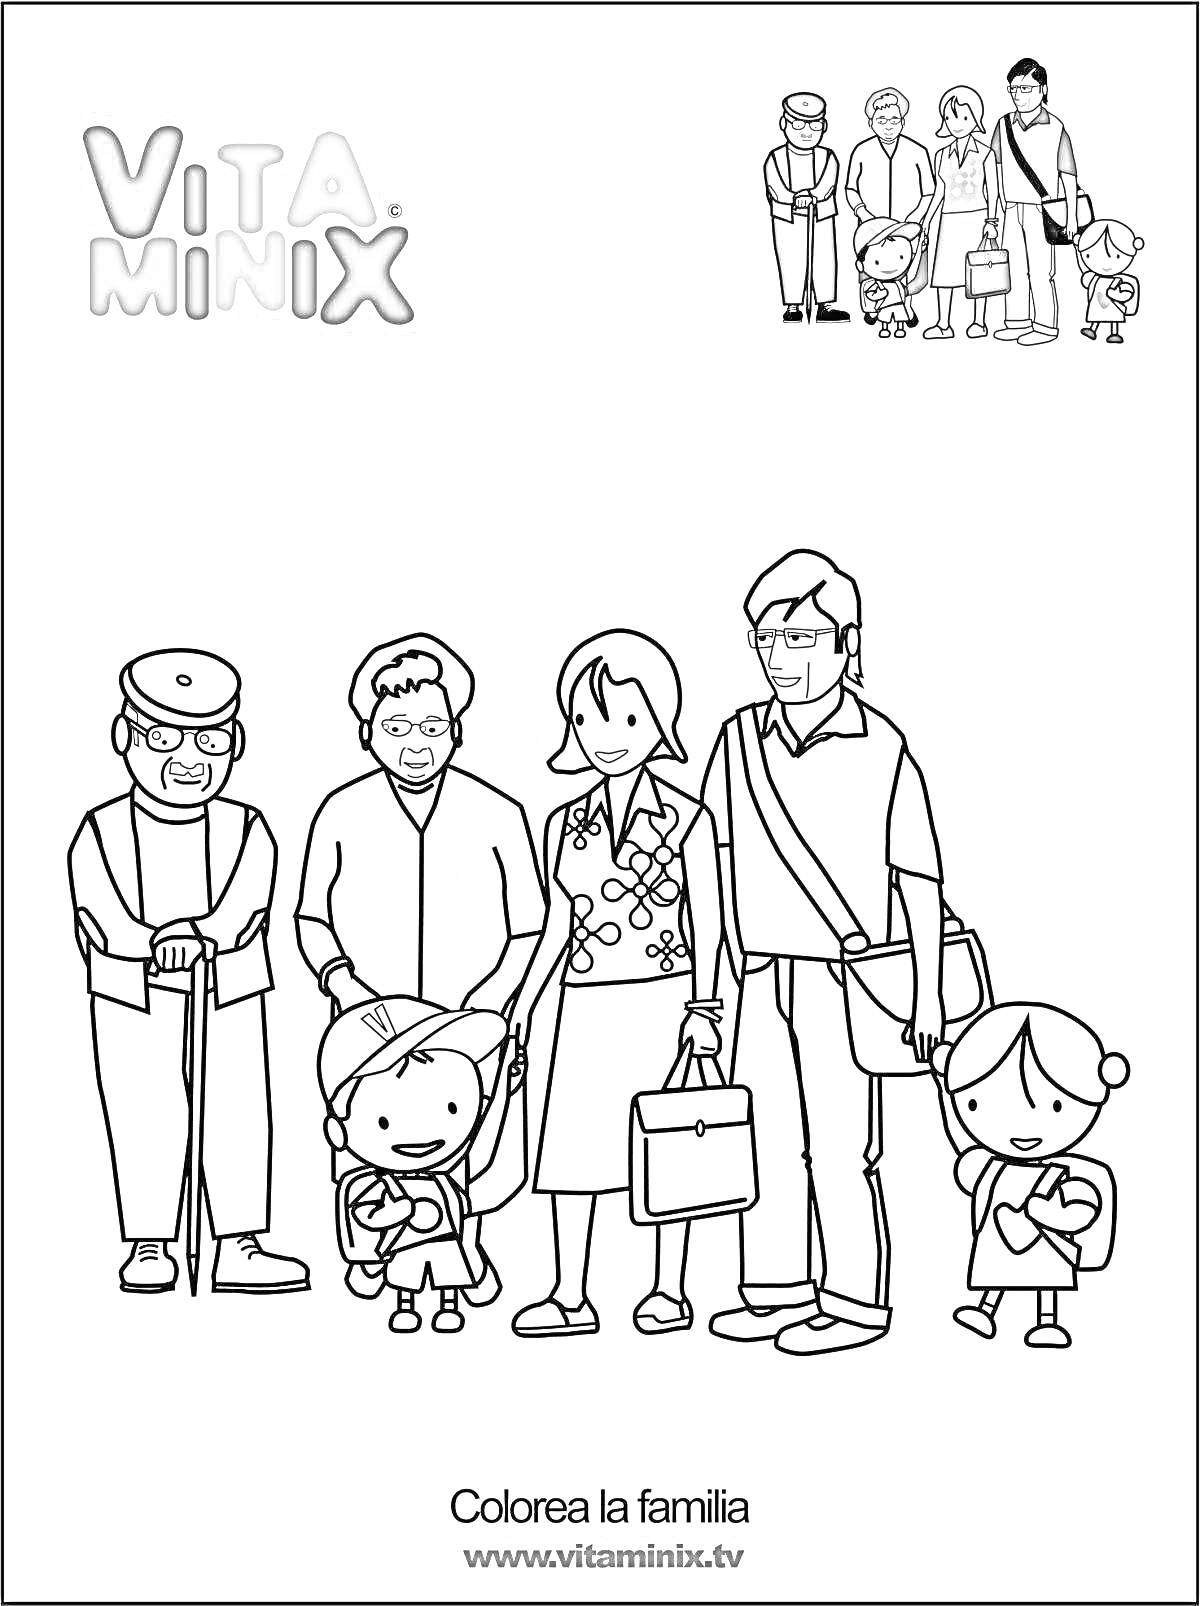 Семья с ребенком, бабушкой, дедушкой, мамой и папой, с багажом